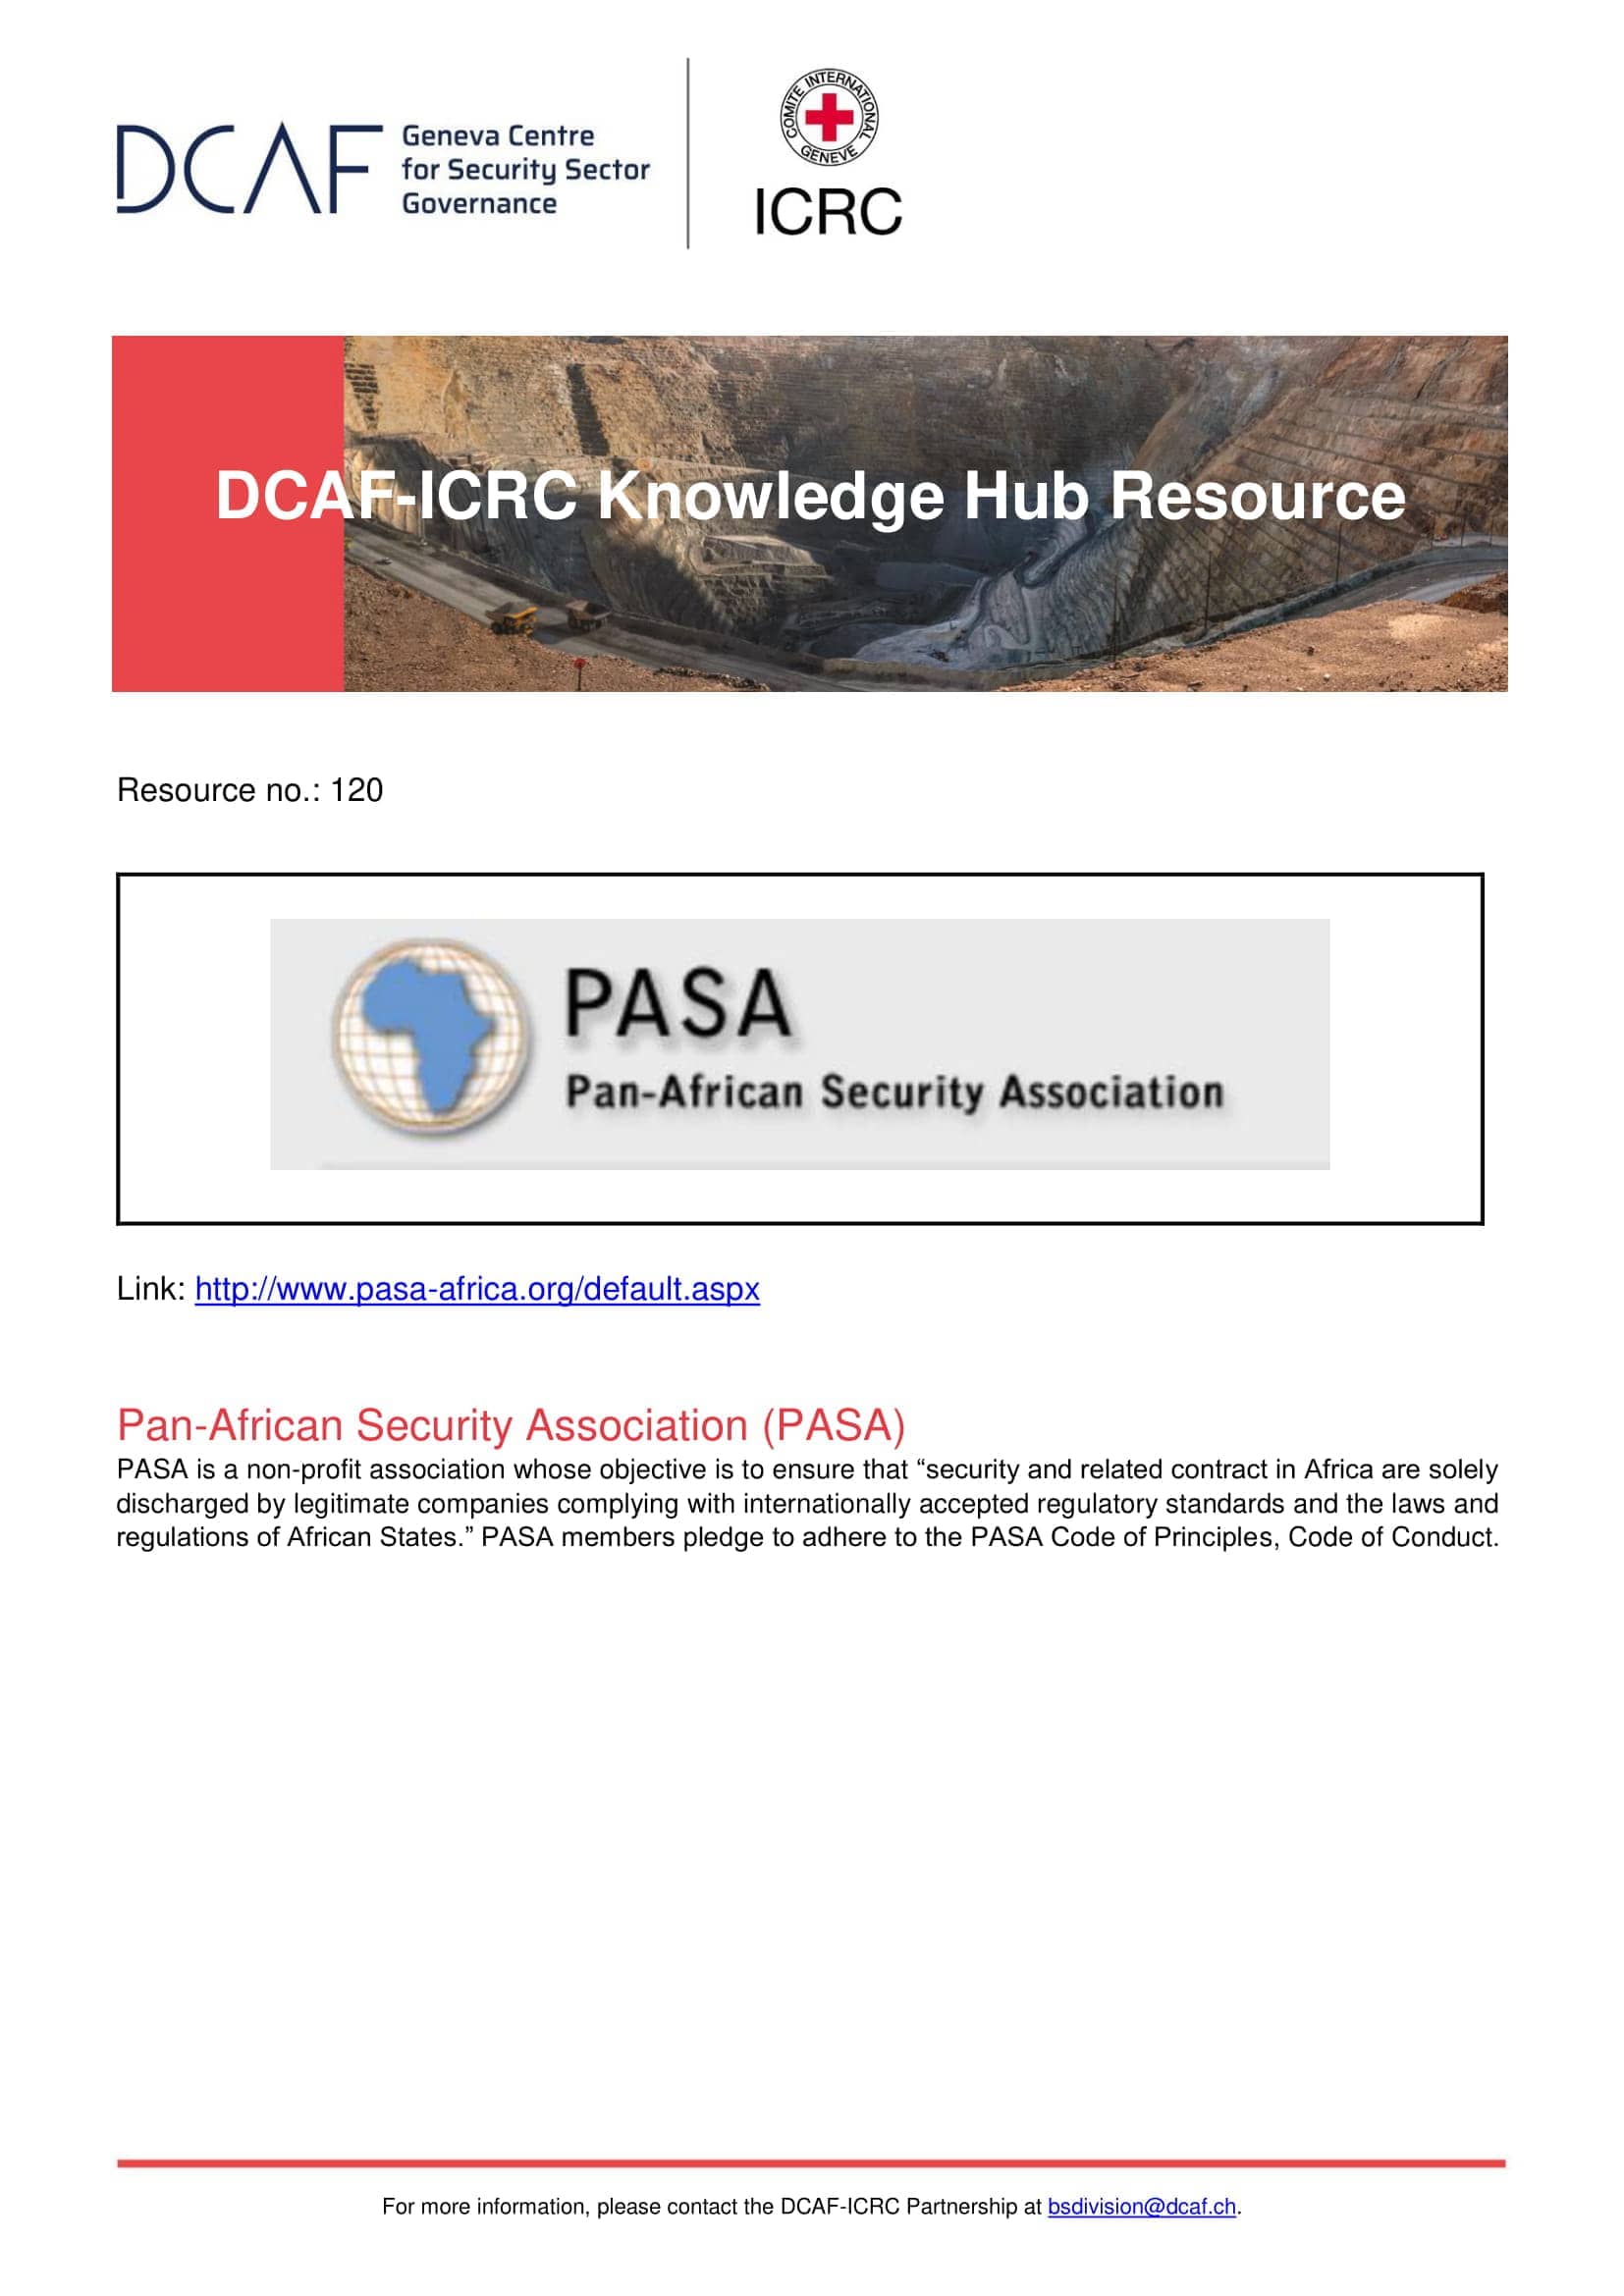 Pan-African Security Association (PASA)